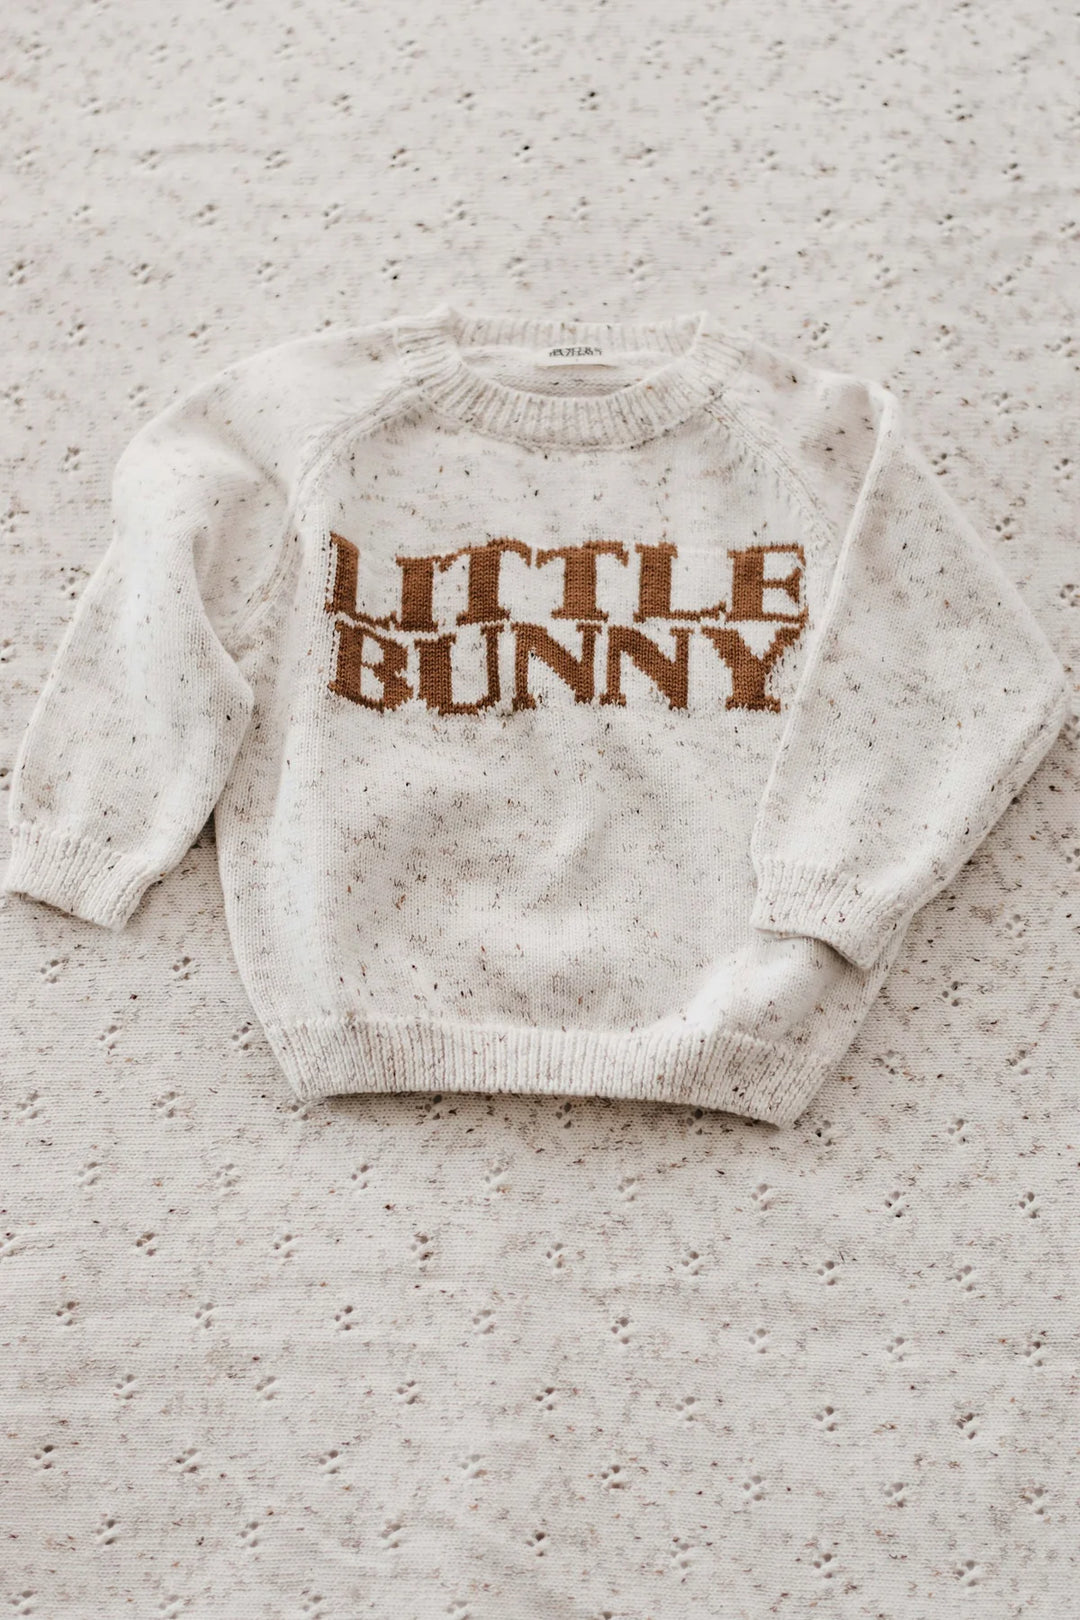 Little bunny knit - JL & CO. boutique 